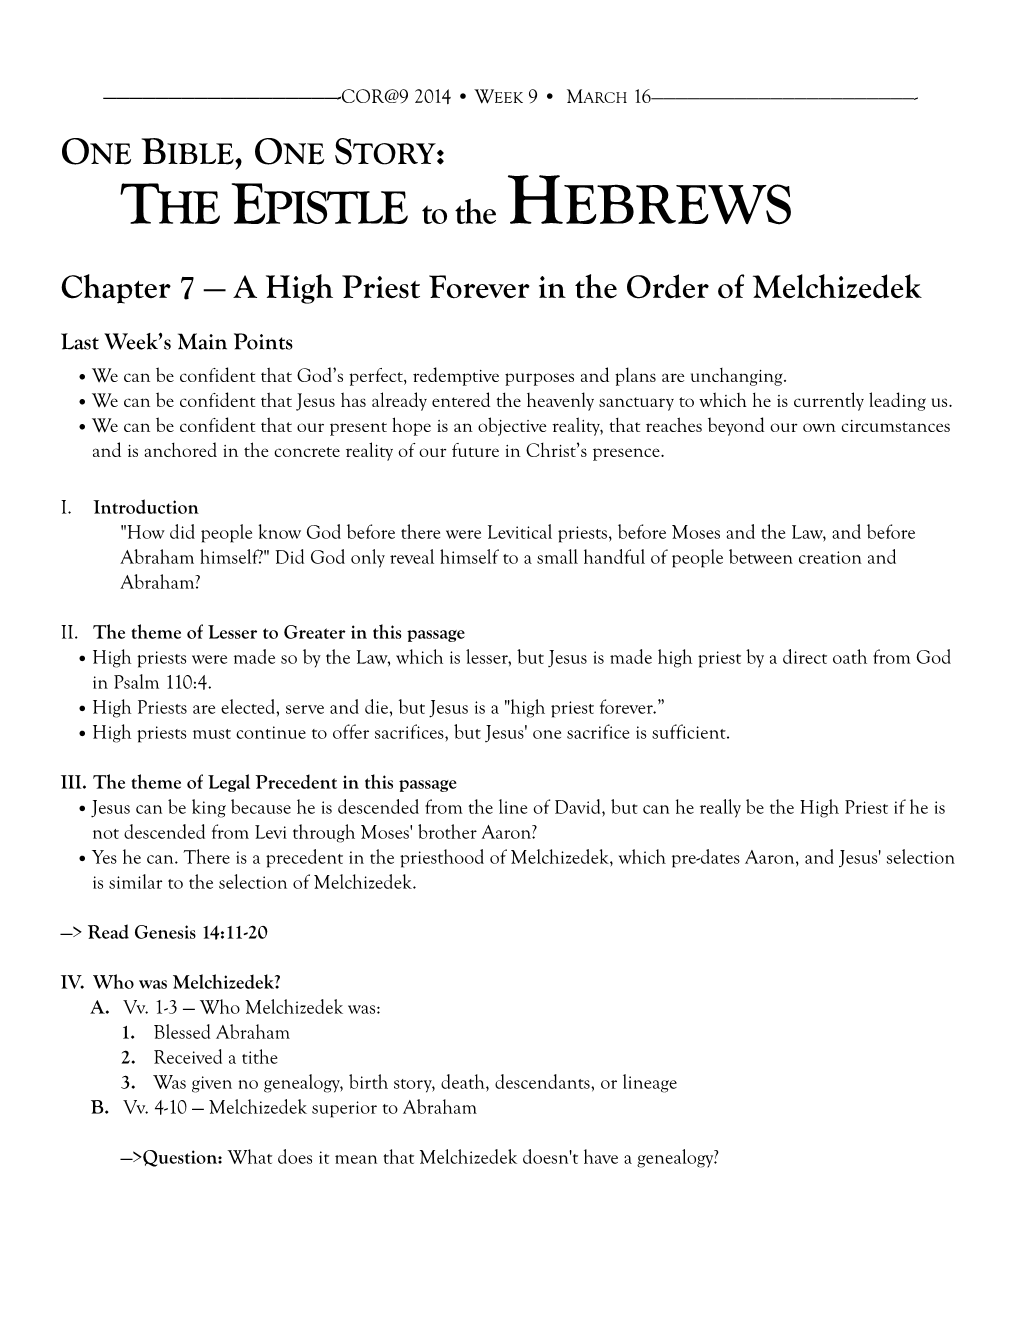 Hebrews 7 Handout